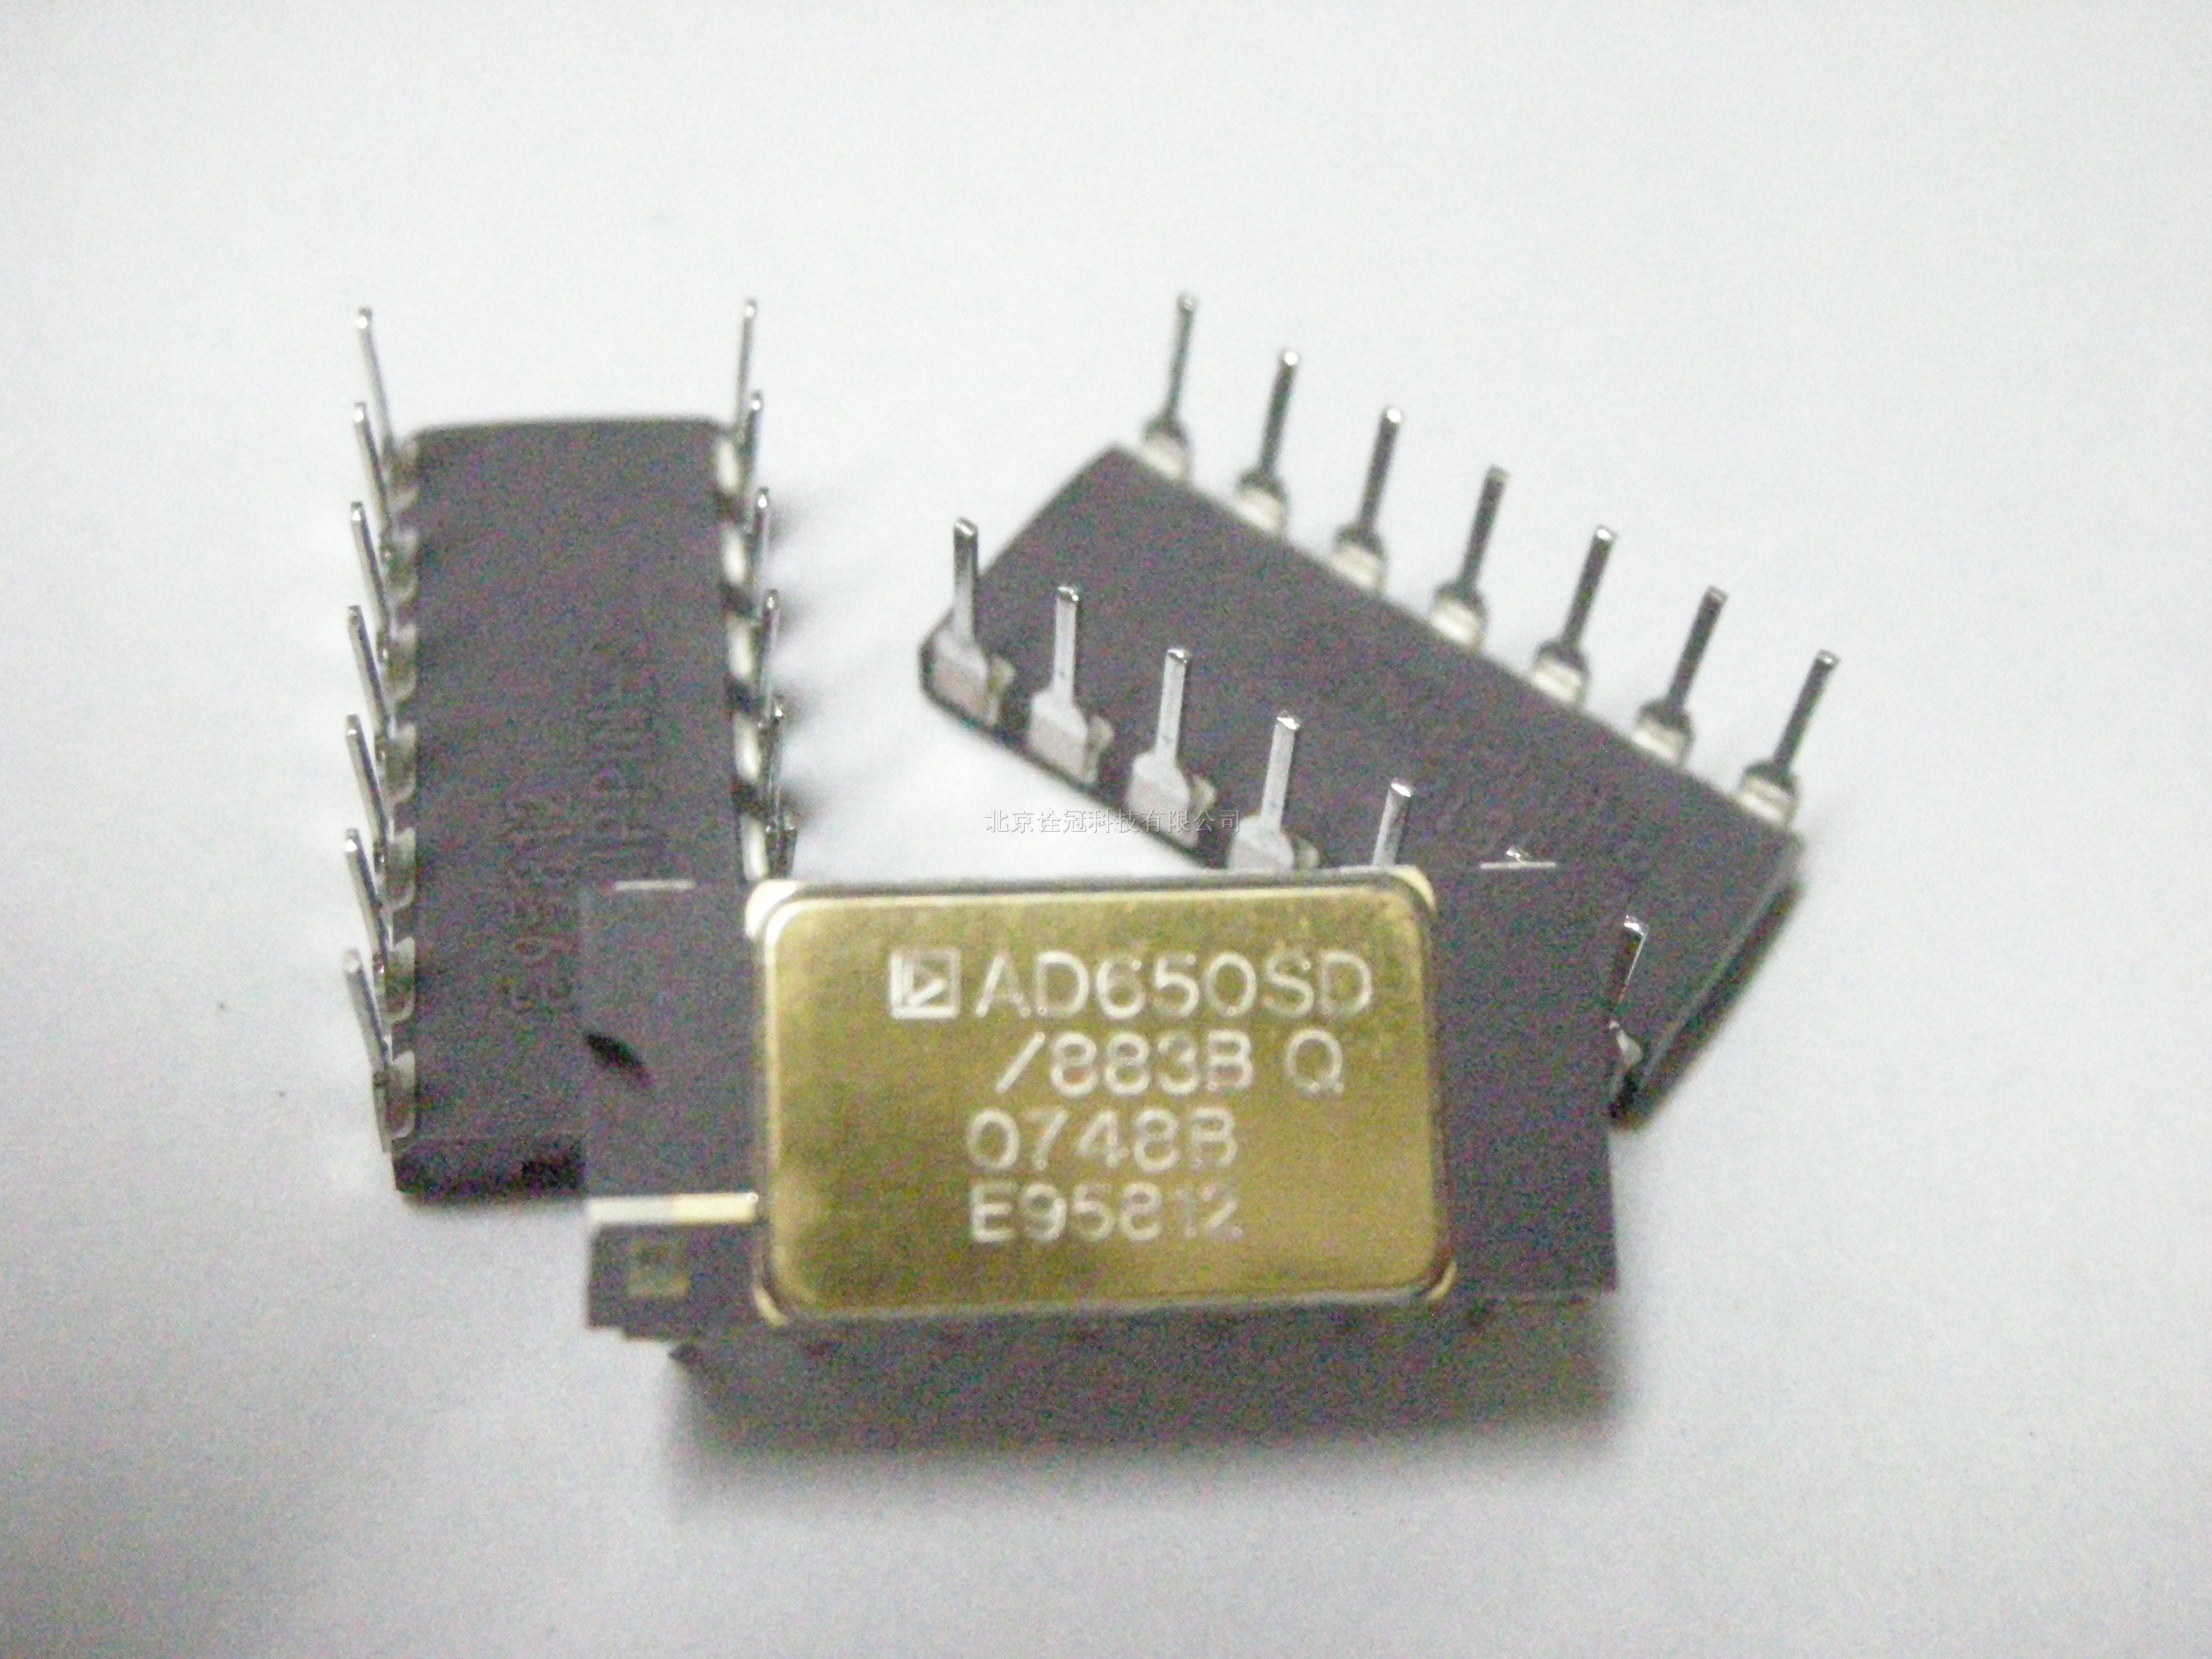 供应AD650SD/883B电压频率转换器